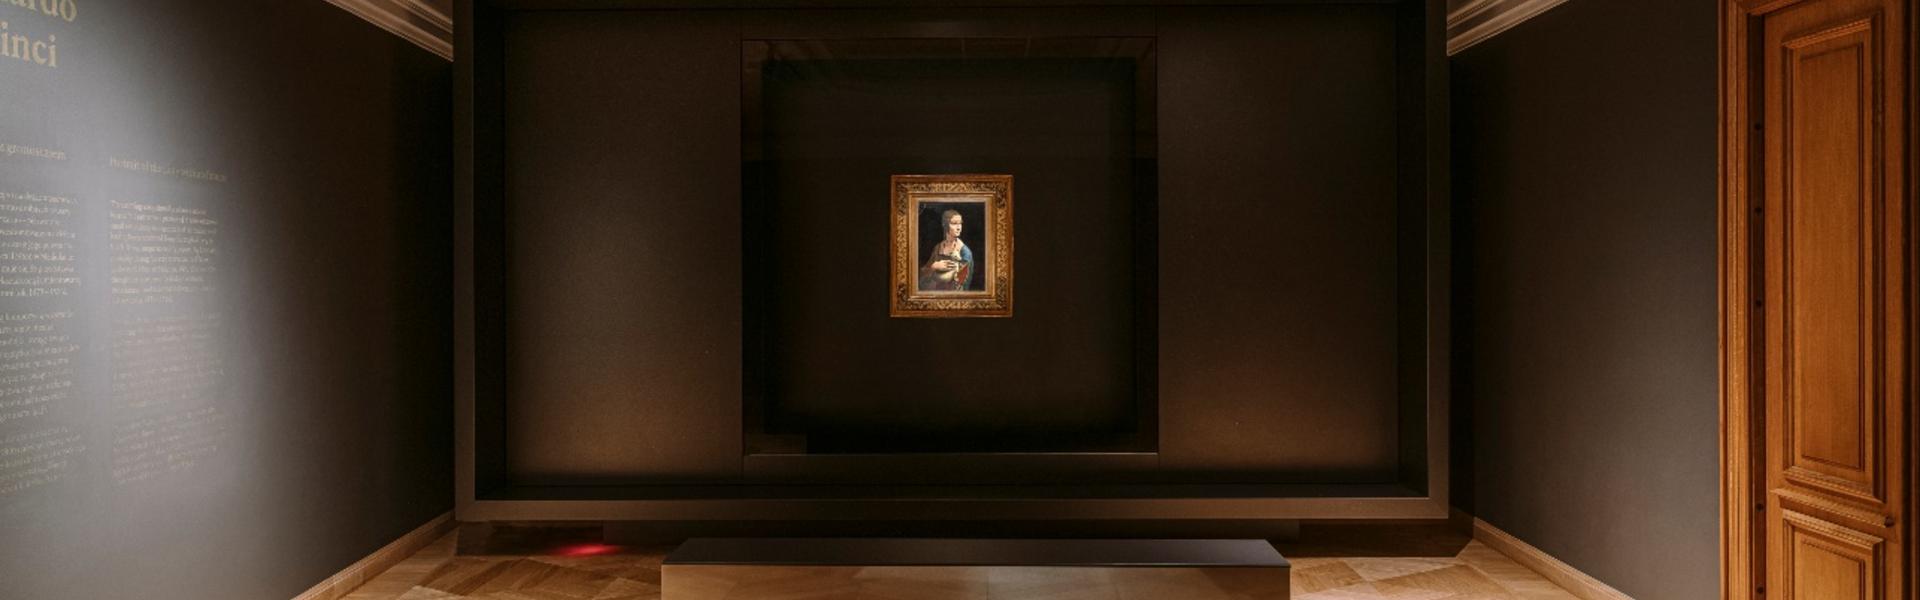 Obraz Dama z gronostajem w sali wystawowej